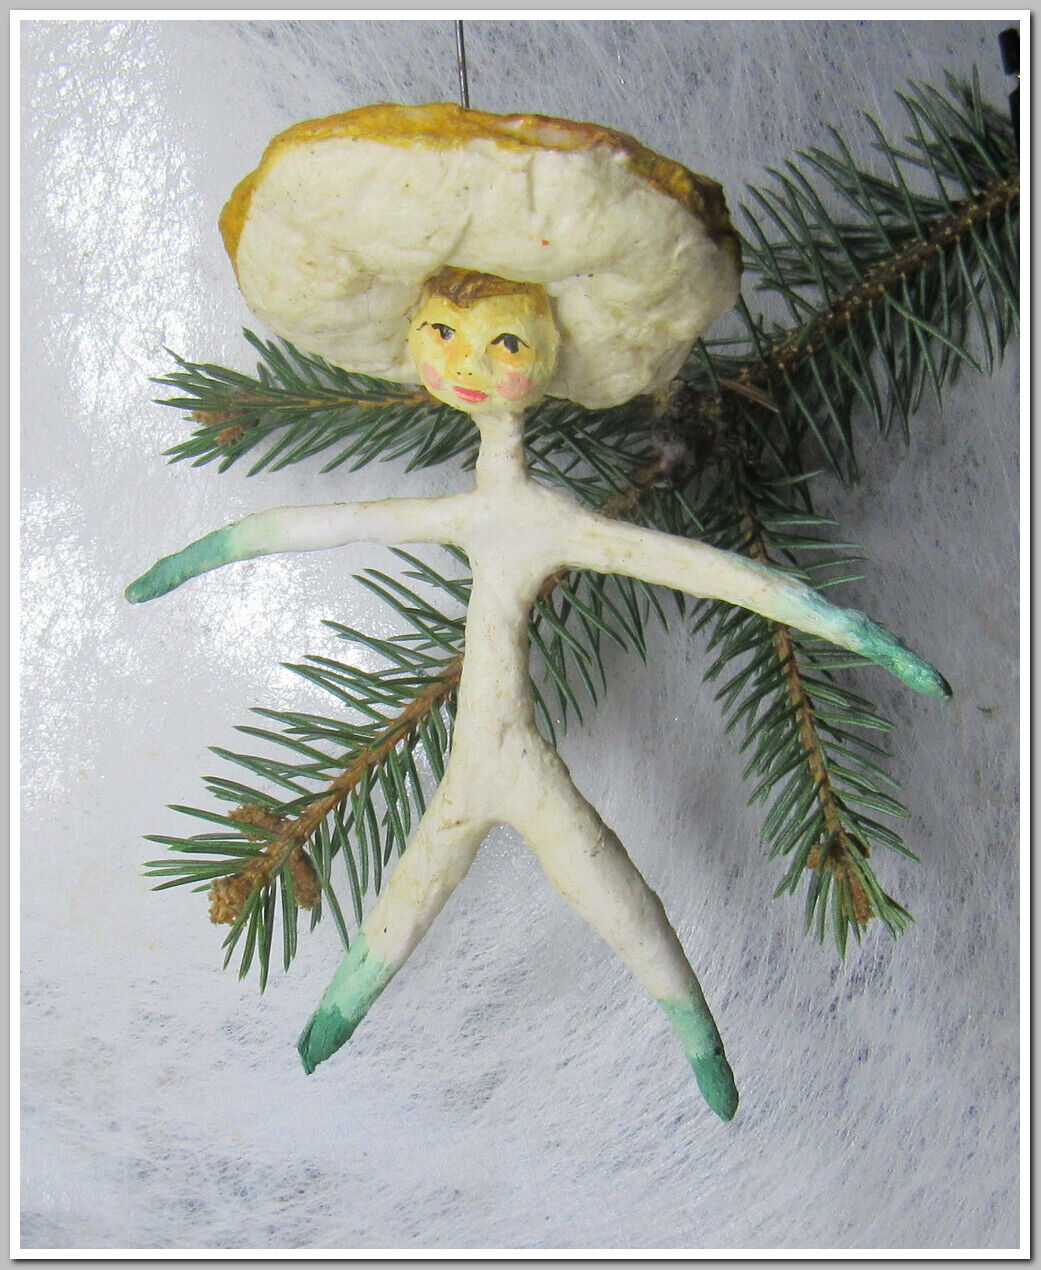 🎄🍄Vintage antique Christmas spun cotton ornament figure Mushroom #29324